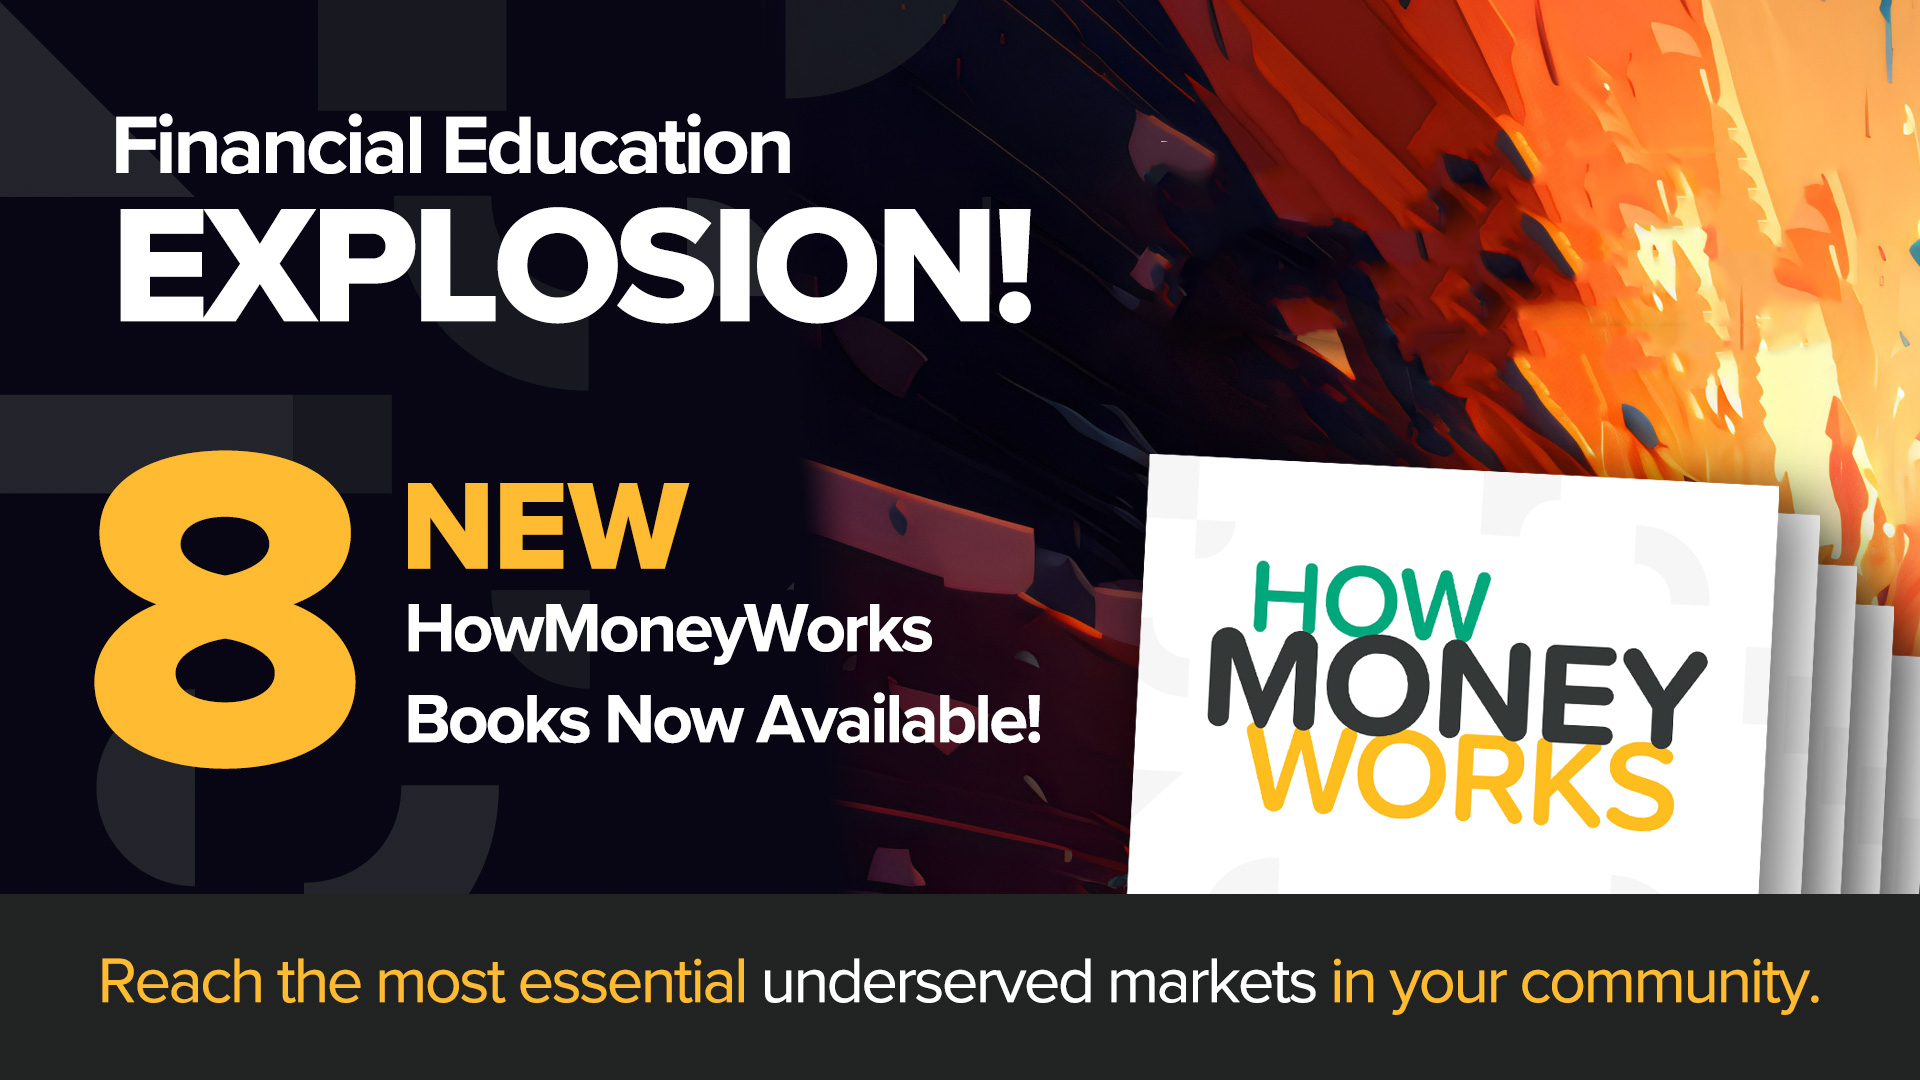 8 cuốn sách HowMoneyWorks mới — Hôm nay chúng tôi tiết lộ một dòng sách hiểu biết về tài chính mới đa dạng